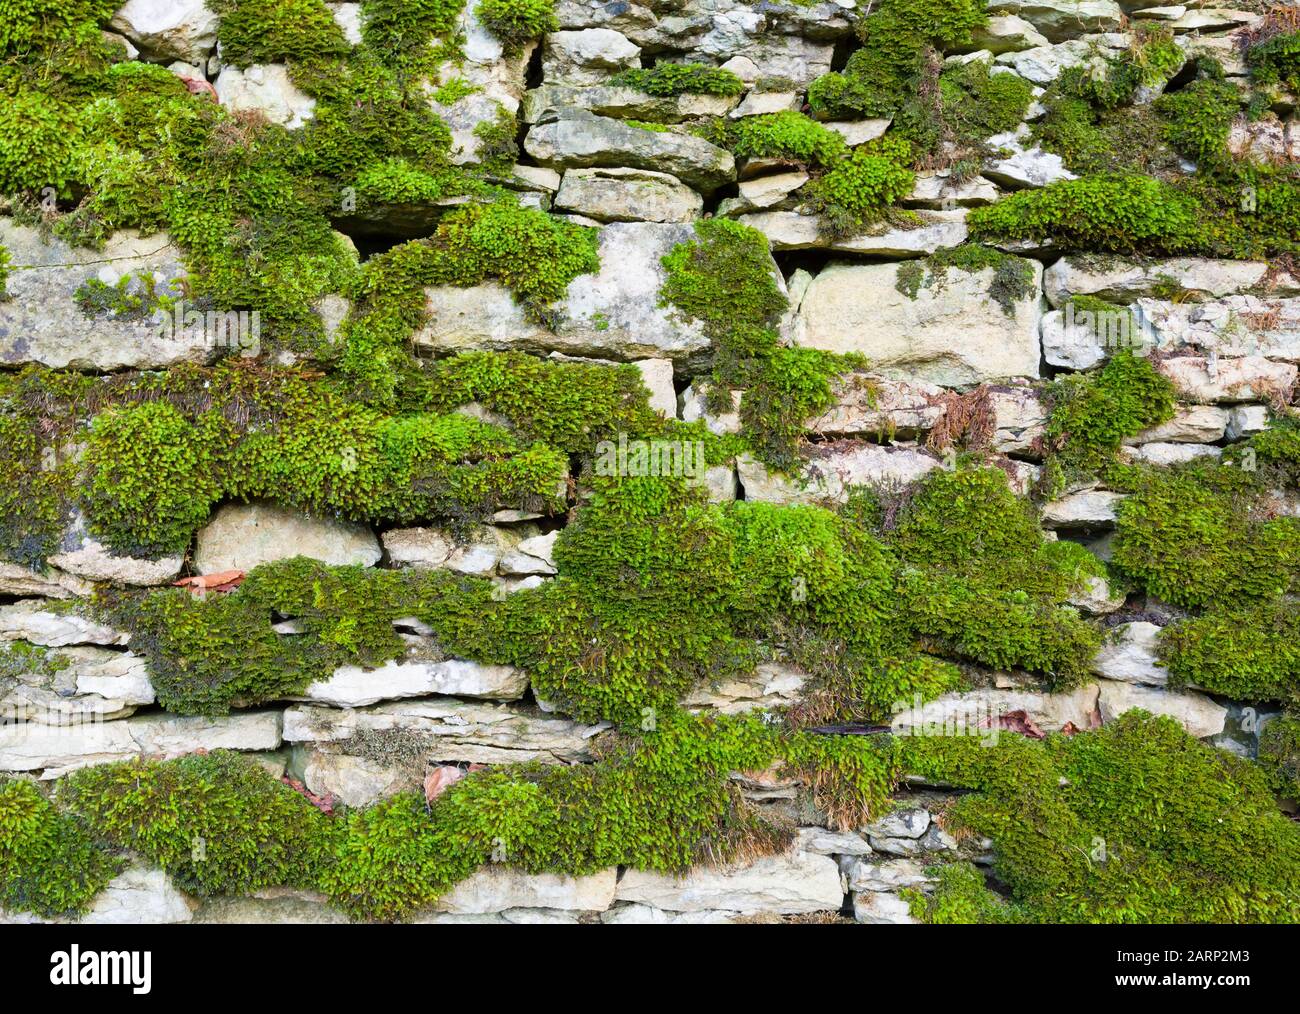 Mit Moos bedeckte Trockensteinwand. Oxfordshire Cotswolds, Großbritannien Stockfoto